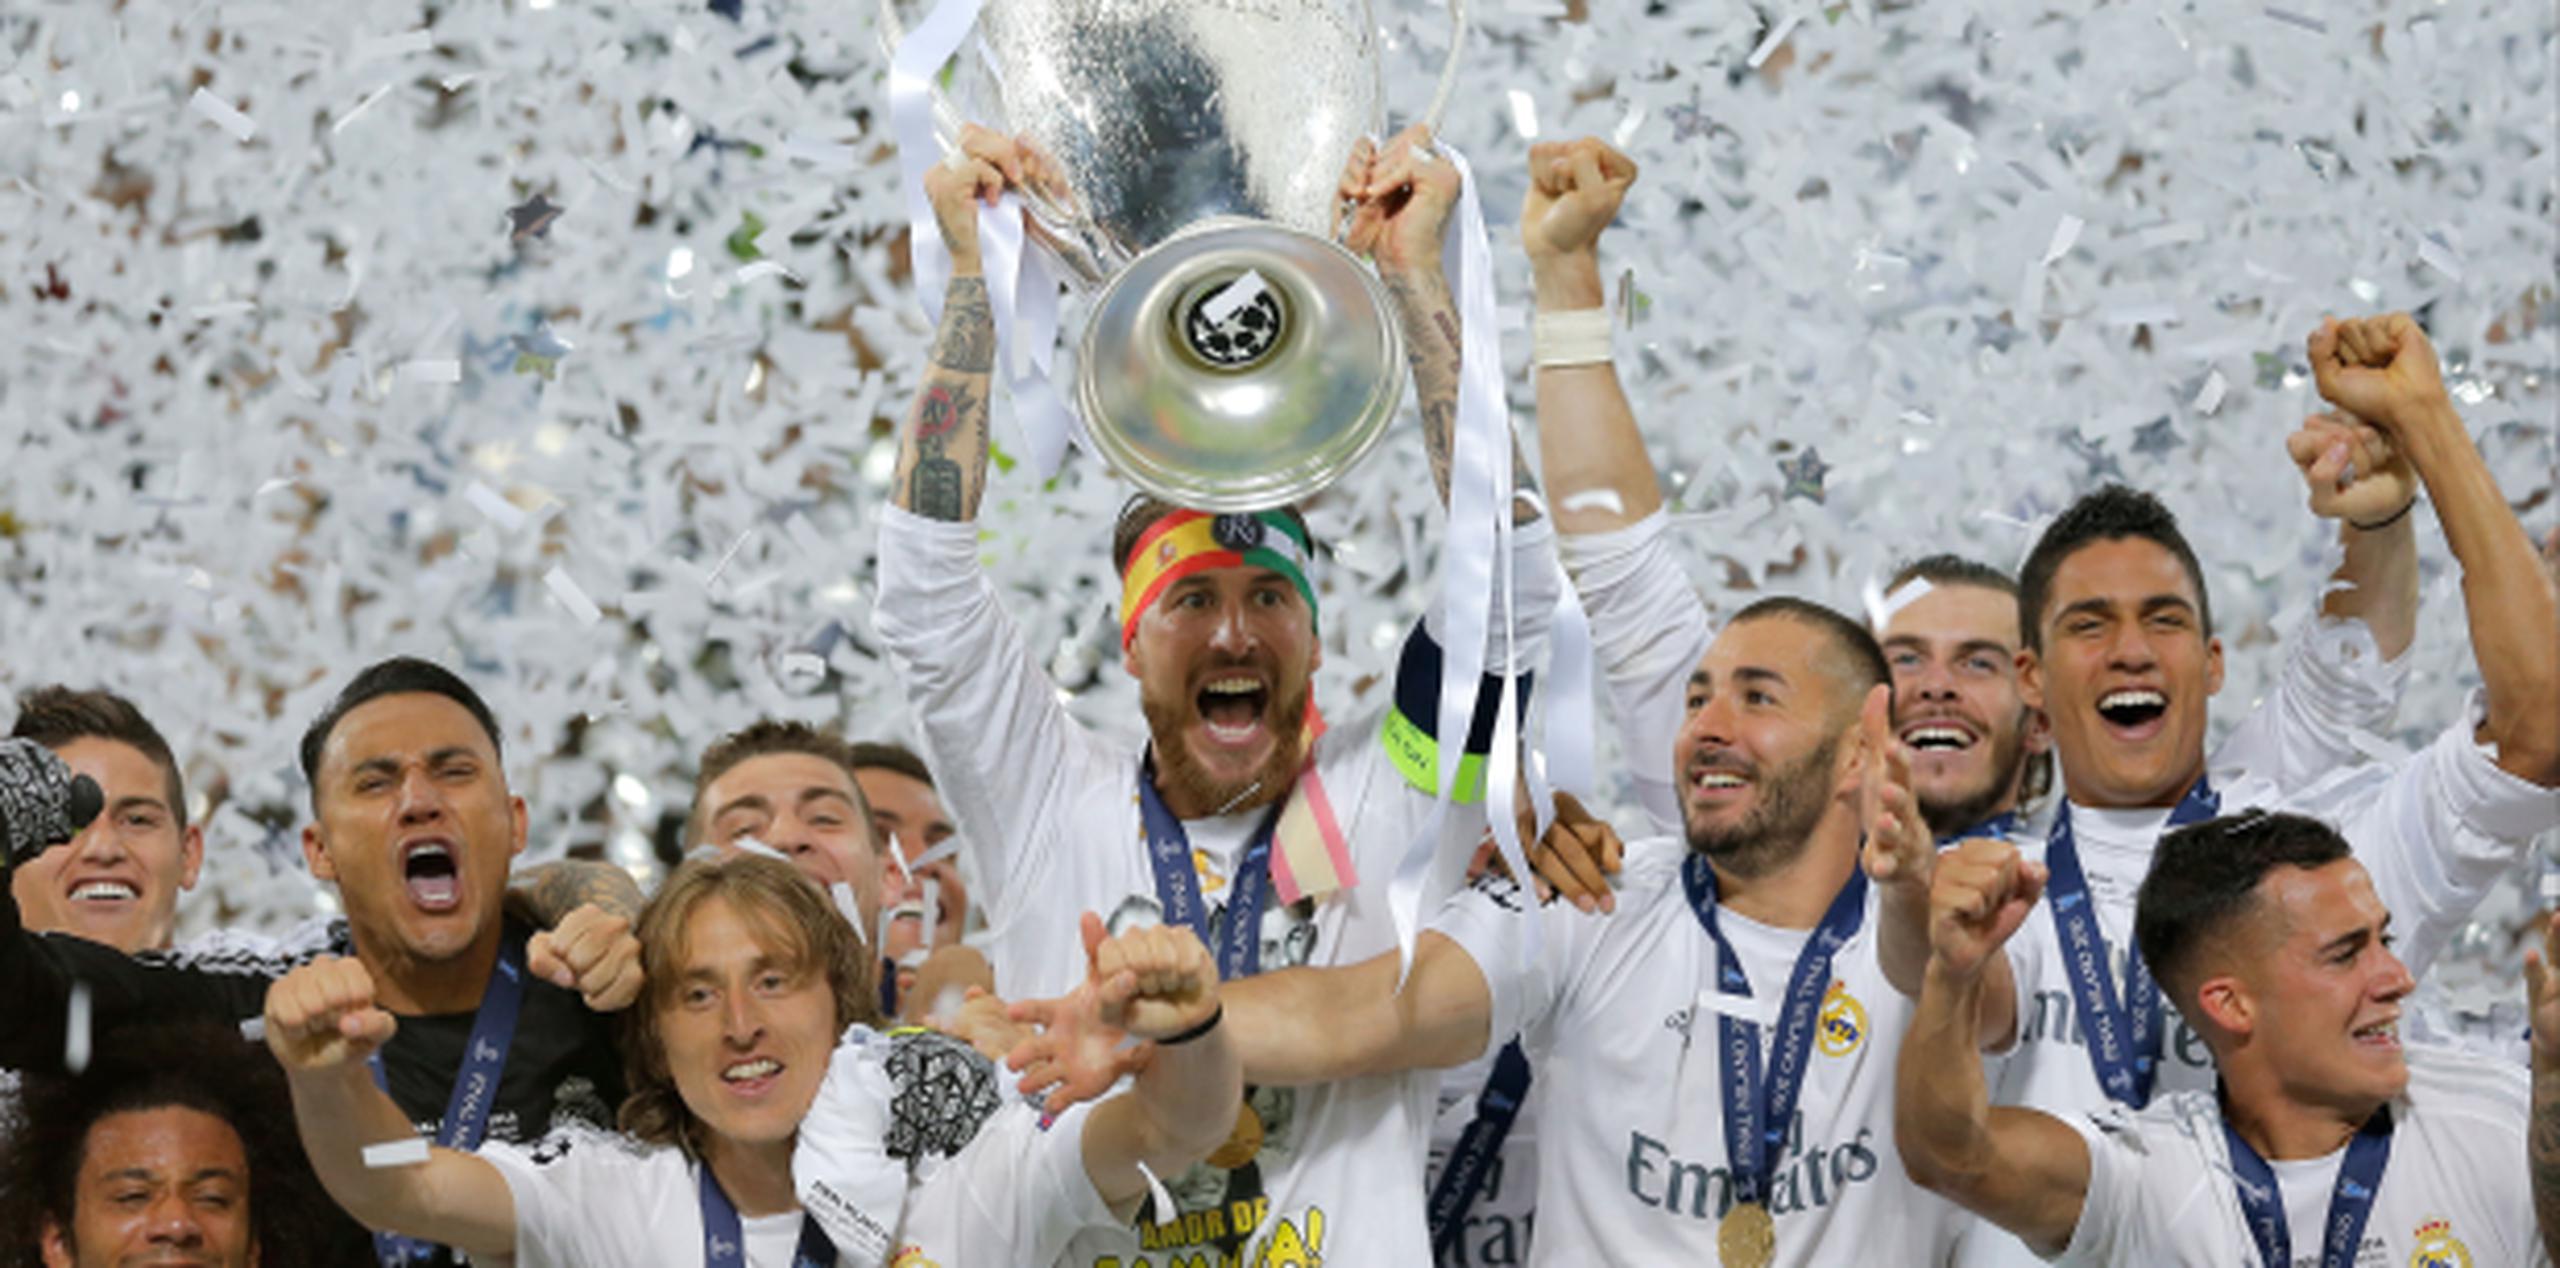 El Real Madrid ganó la edición pasada en un partido final celebrado en Milán, Italia. (Prensa Asociada)